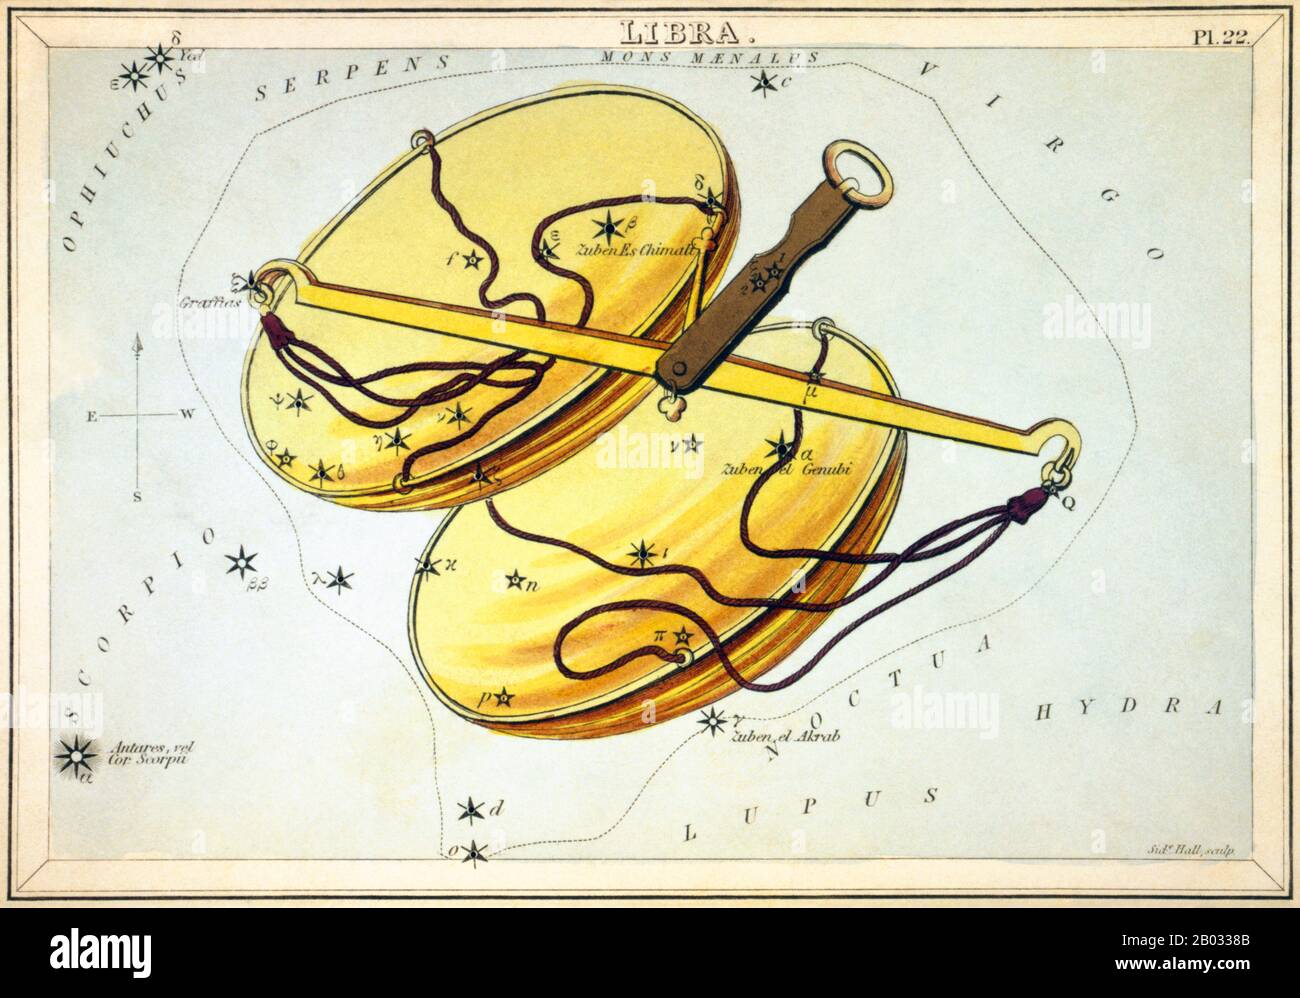 Urania's Mirror; ou, une vue des Cieux est un ensemble de 32 cartes astronomiques de cartes à étoiles, publiées pour la première fois en novembre 1824. Ils avaient des illustrations basées sur l'Atlas céleste d'Alexander Jamieson, mais l'ajout de trous perforés les a permis de les tenir jusqu'à une lumière pour voir une représentation des étoiles de la constellation. Ils ont été gravés par Sidney Hall, et auraient été conçus par une dame, mais ont depuis été identifiés comme le travail du révérend Richard Rouse Bloxam, un maître adjoint à l'école de Rugby. La couverture de la boîte-set a montré une représentation d'Urania, la muse de l'astronomie, an Banque D'Images